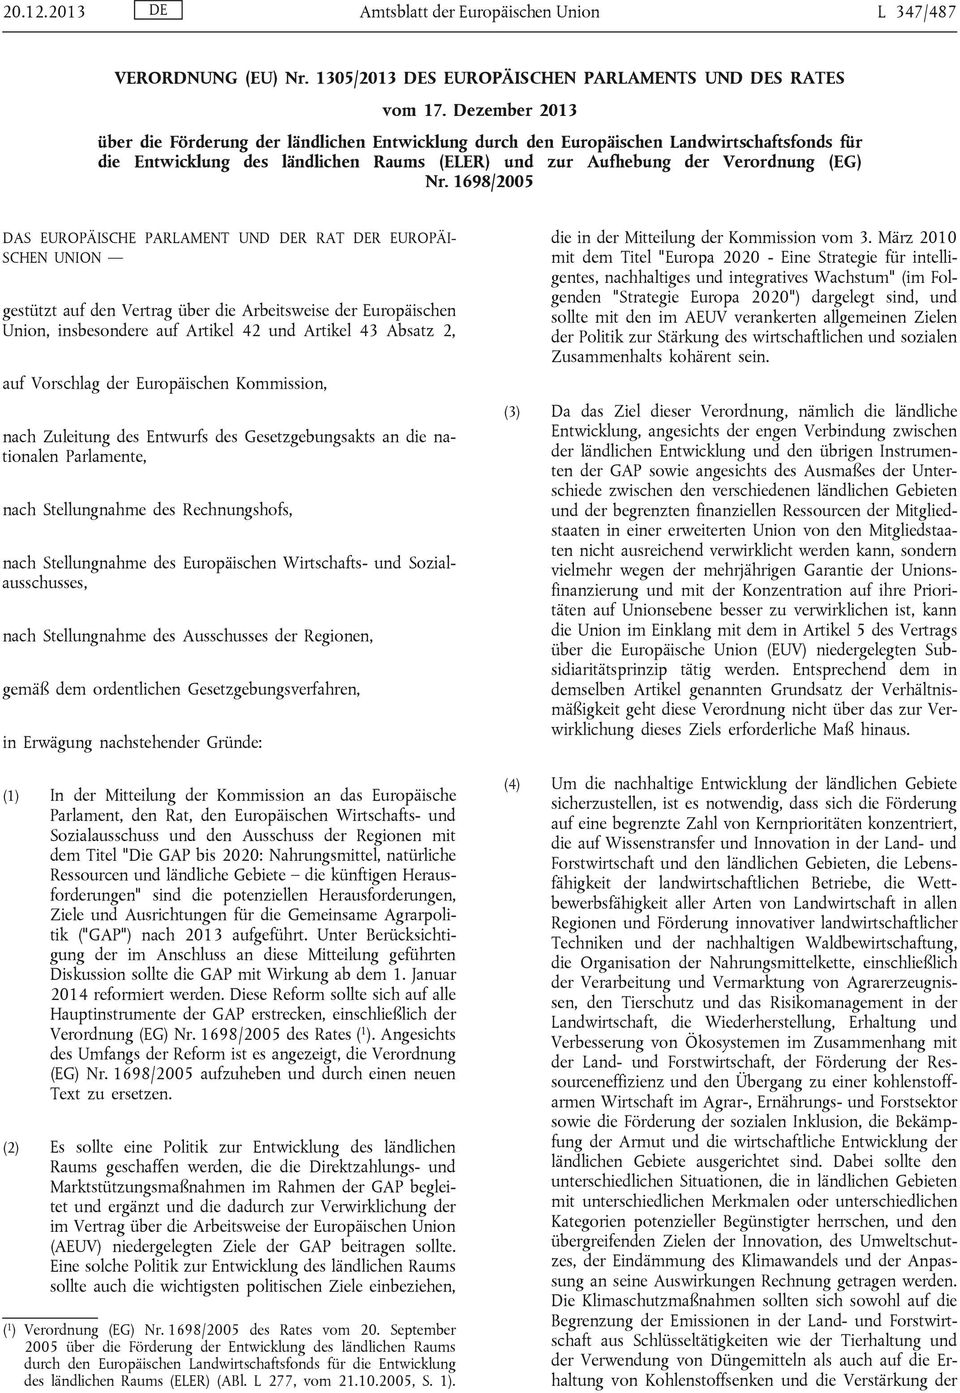 1698/2005 DAS EUROPÄISCHE PARLAMENT UND DER RAT DER EUROPÄI SCHEN UNION gestützt auf den Vertrag über die Arbeitsweise der Europäischen Union, insbesondere auf Artikel 42 und Artikel 43 Absatz 2, auf